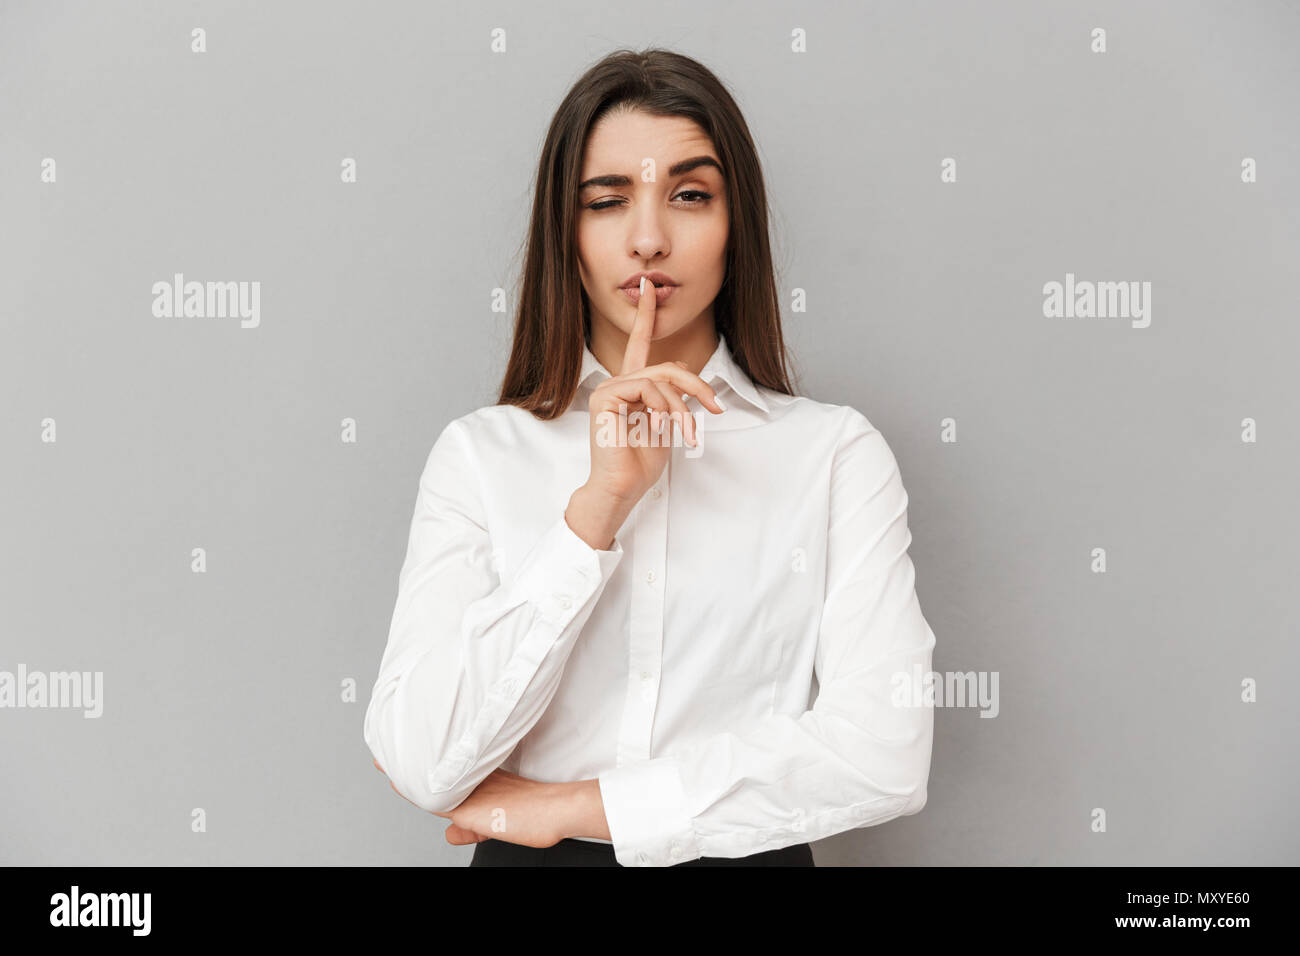 Image de femme brune 20s dans l'Habillement formel tenant l'index sur les lèvres et lui demandant de garder le silence sur fond gris isolé Banque D'Images